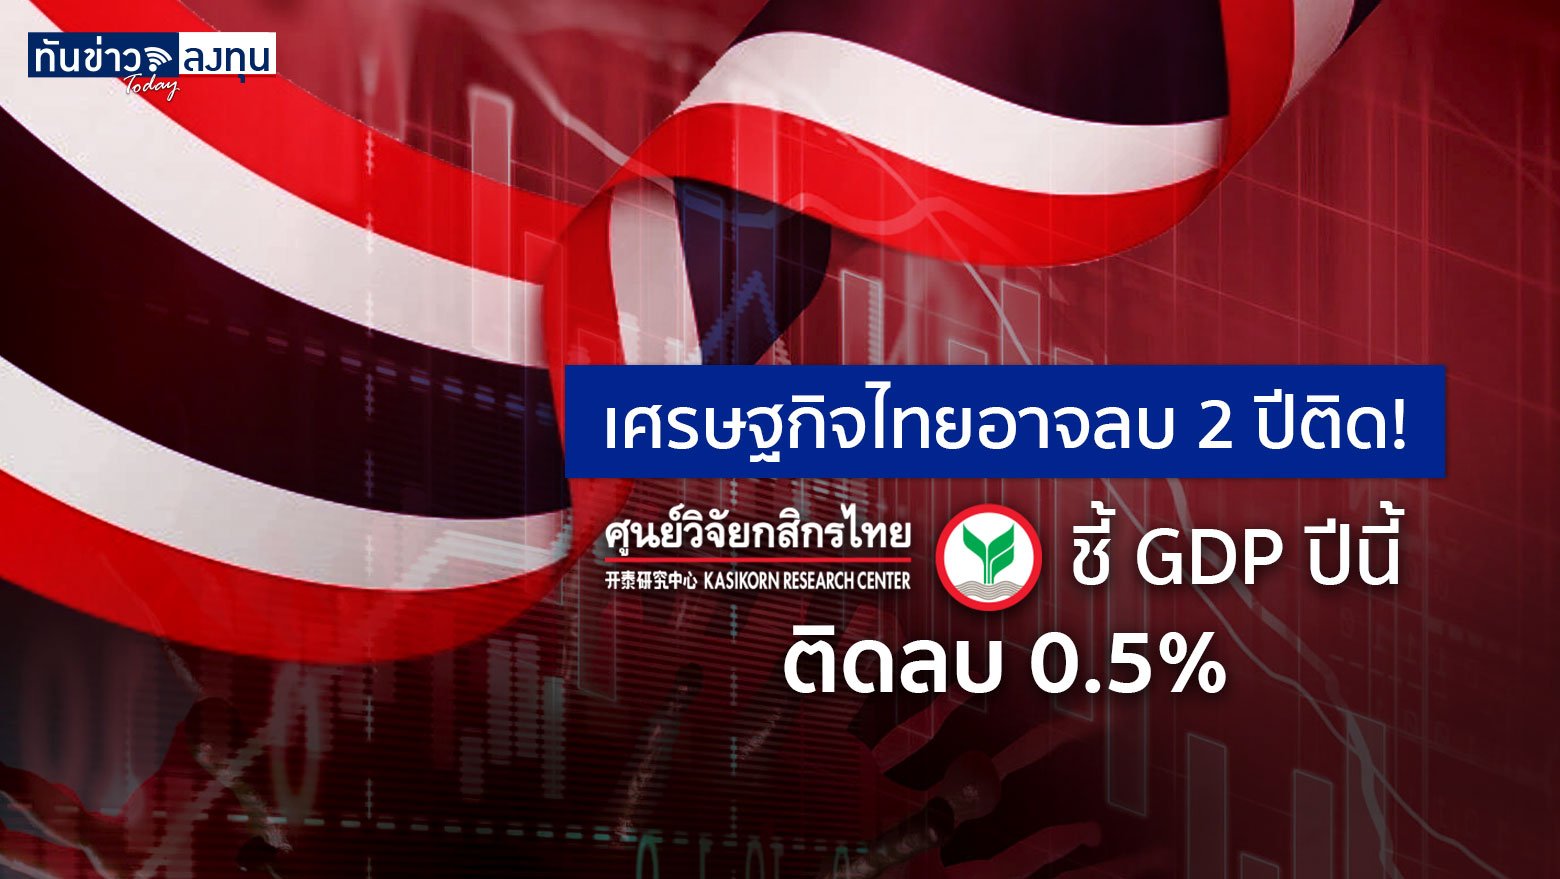 เศรษฐกิจไทยอาจลบ 2 ปีติด! ศูนย์วิจัยกสิกรชี้ GDP ปีนี้ ติดลบ 0.5%